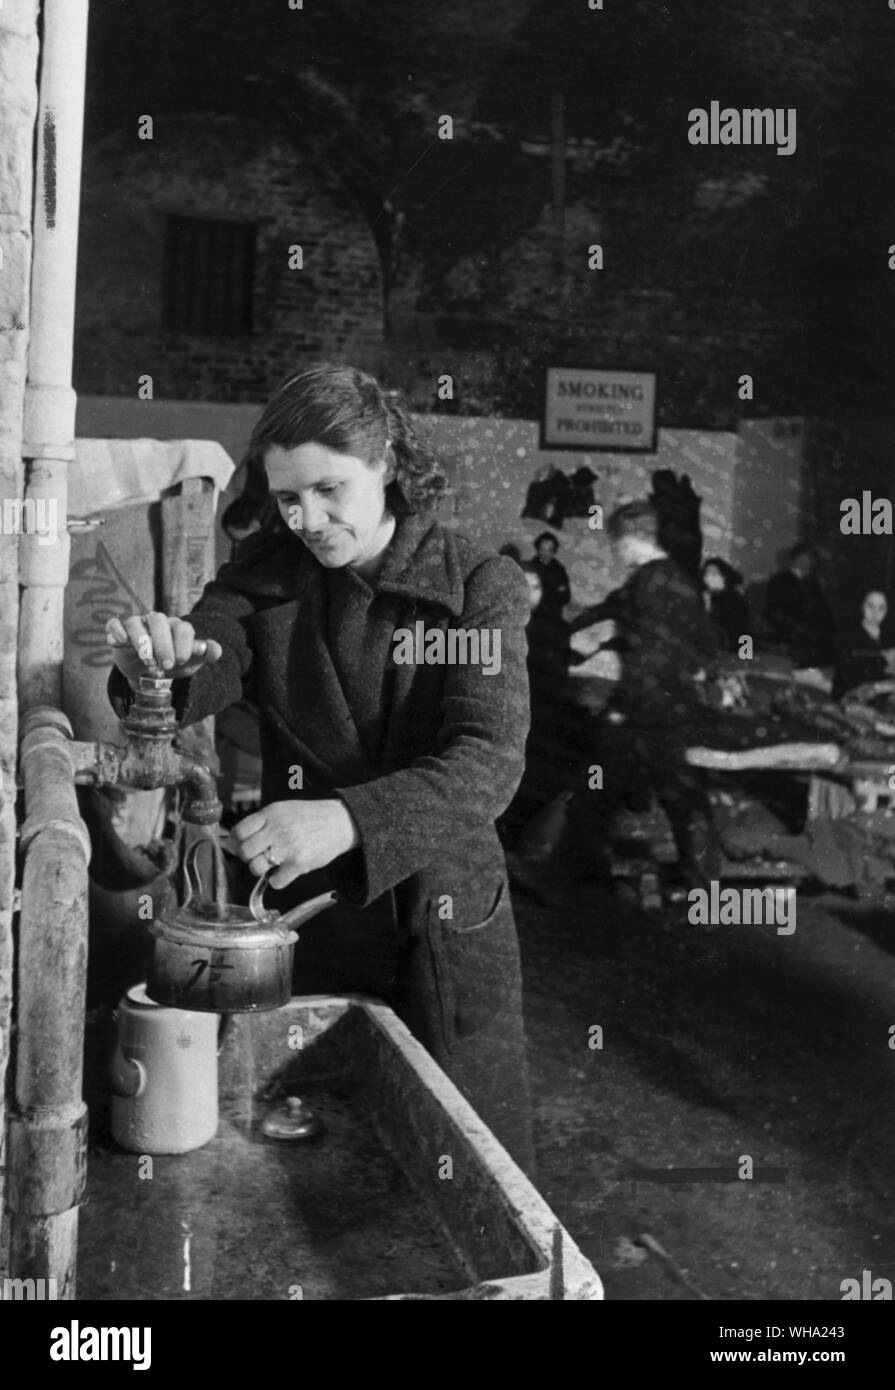 WW2: South East London refugio. Aquí bajo los arcos hay grifos y fregaderos, donde las madres pueden llenar sus calderas para sus bebés' los alimentos. Los utensilios se deben lavar bajo el mismo toque. Foto de stock